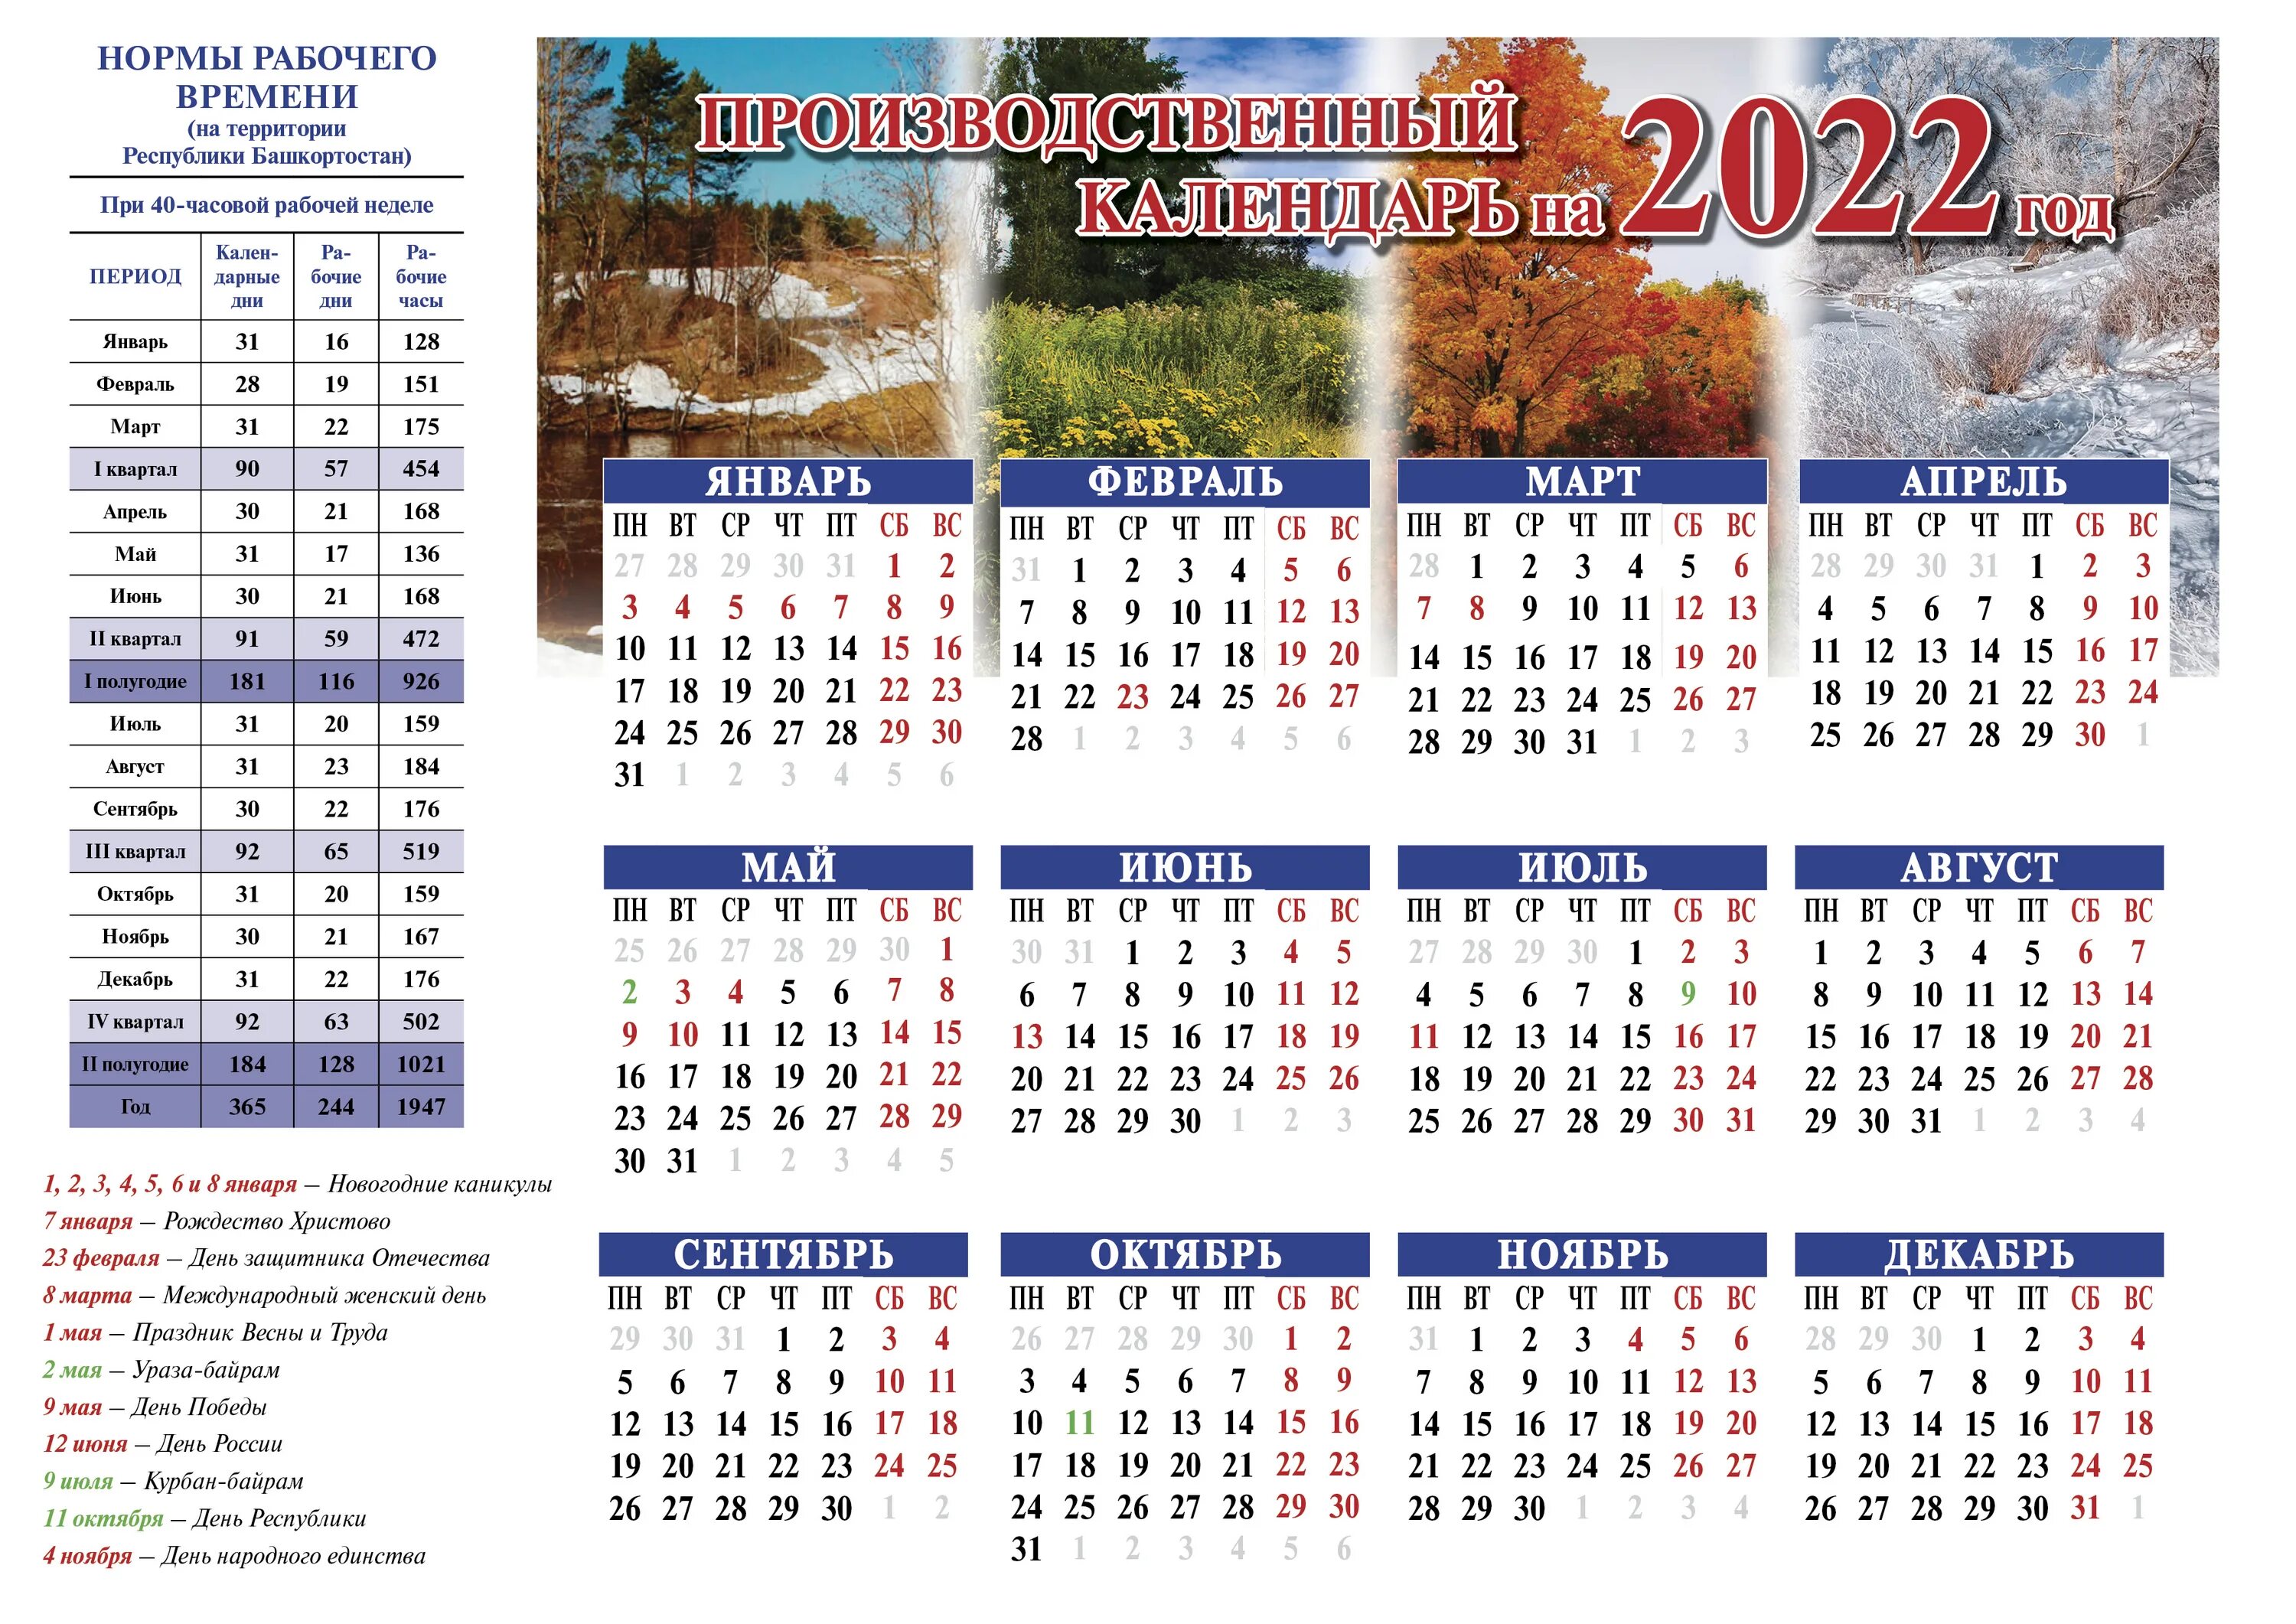 Праздничные дни в октябре 2022 в Башкирии. Отдыхаем в мае 2022. Выходные дни в 2022 году в Башкирии. Выходные в мае 2022.